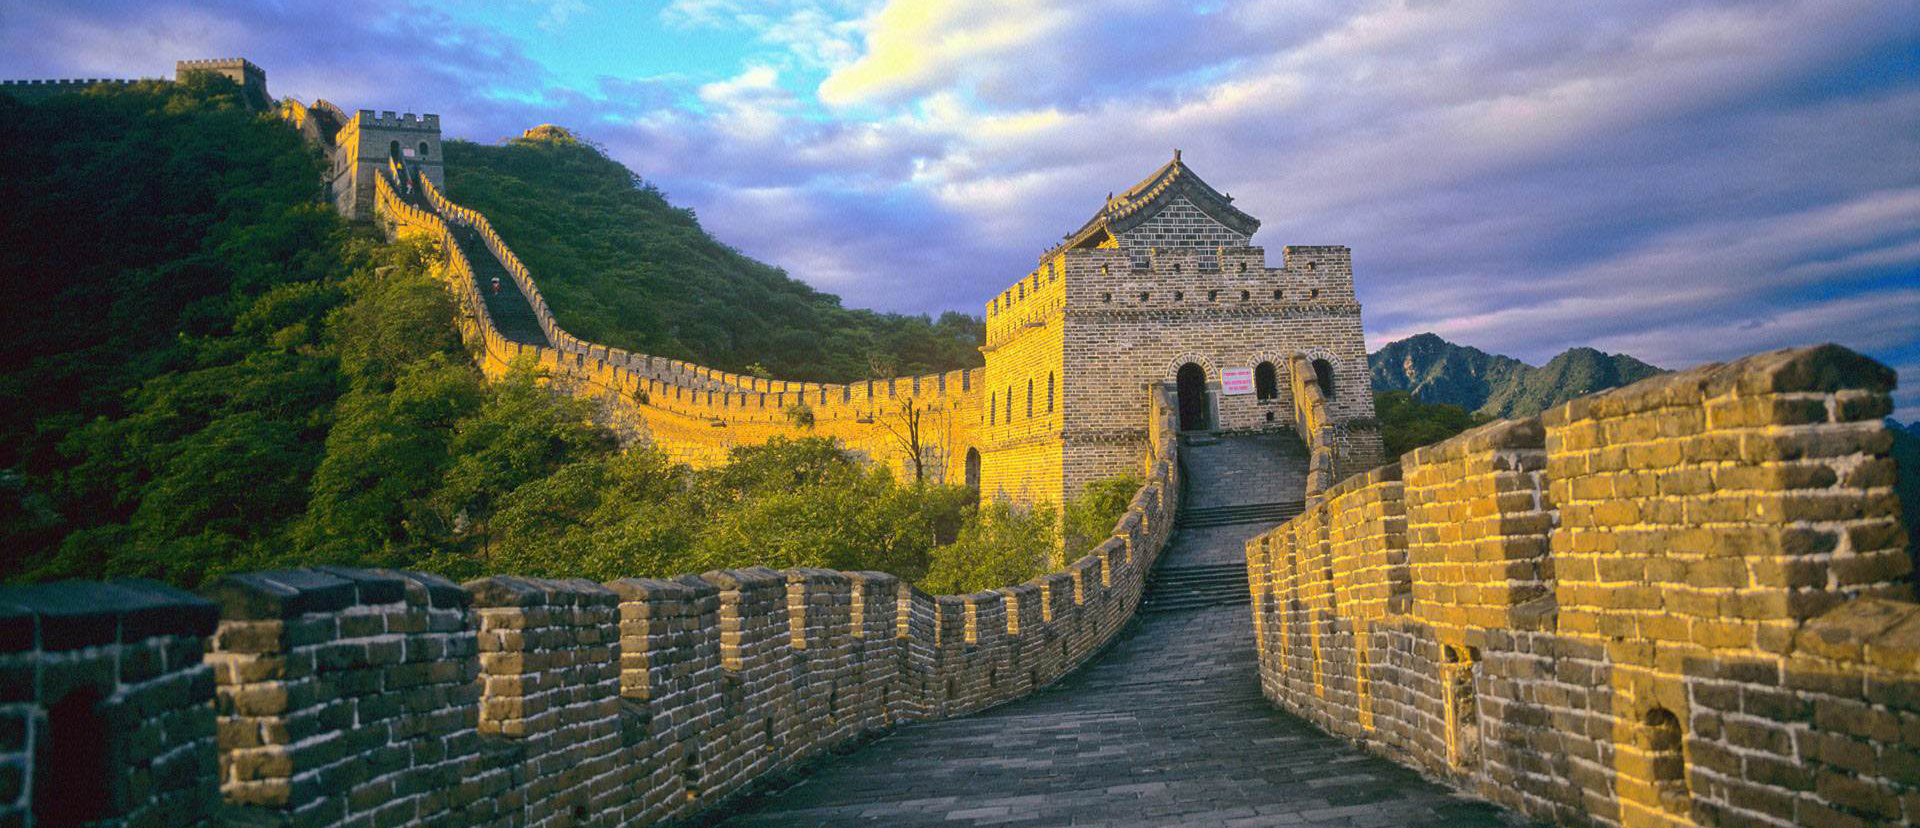 Die Chinesische Mauer. China Reisetipps und Reiseinfos.